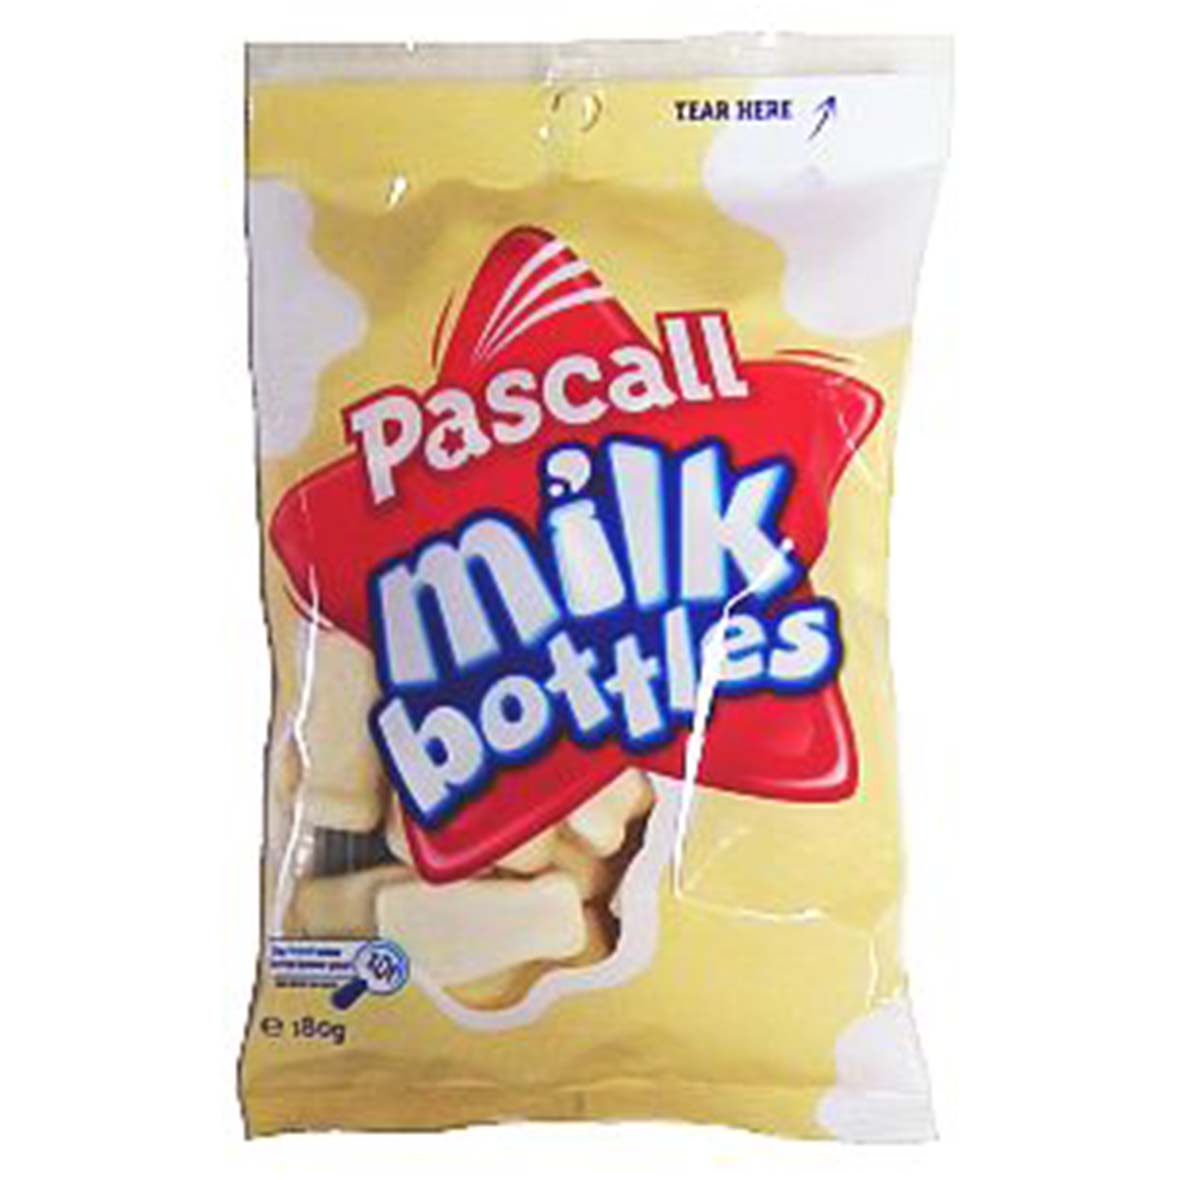 Pascall Milk Bottles (NZ) 170g - Candy Mail UK